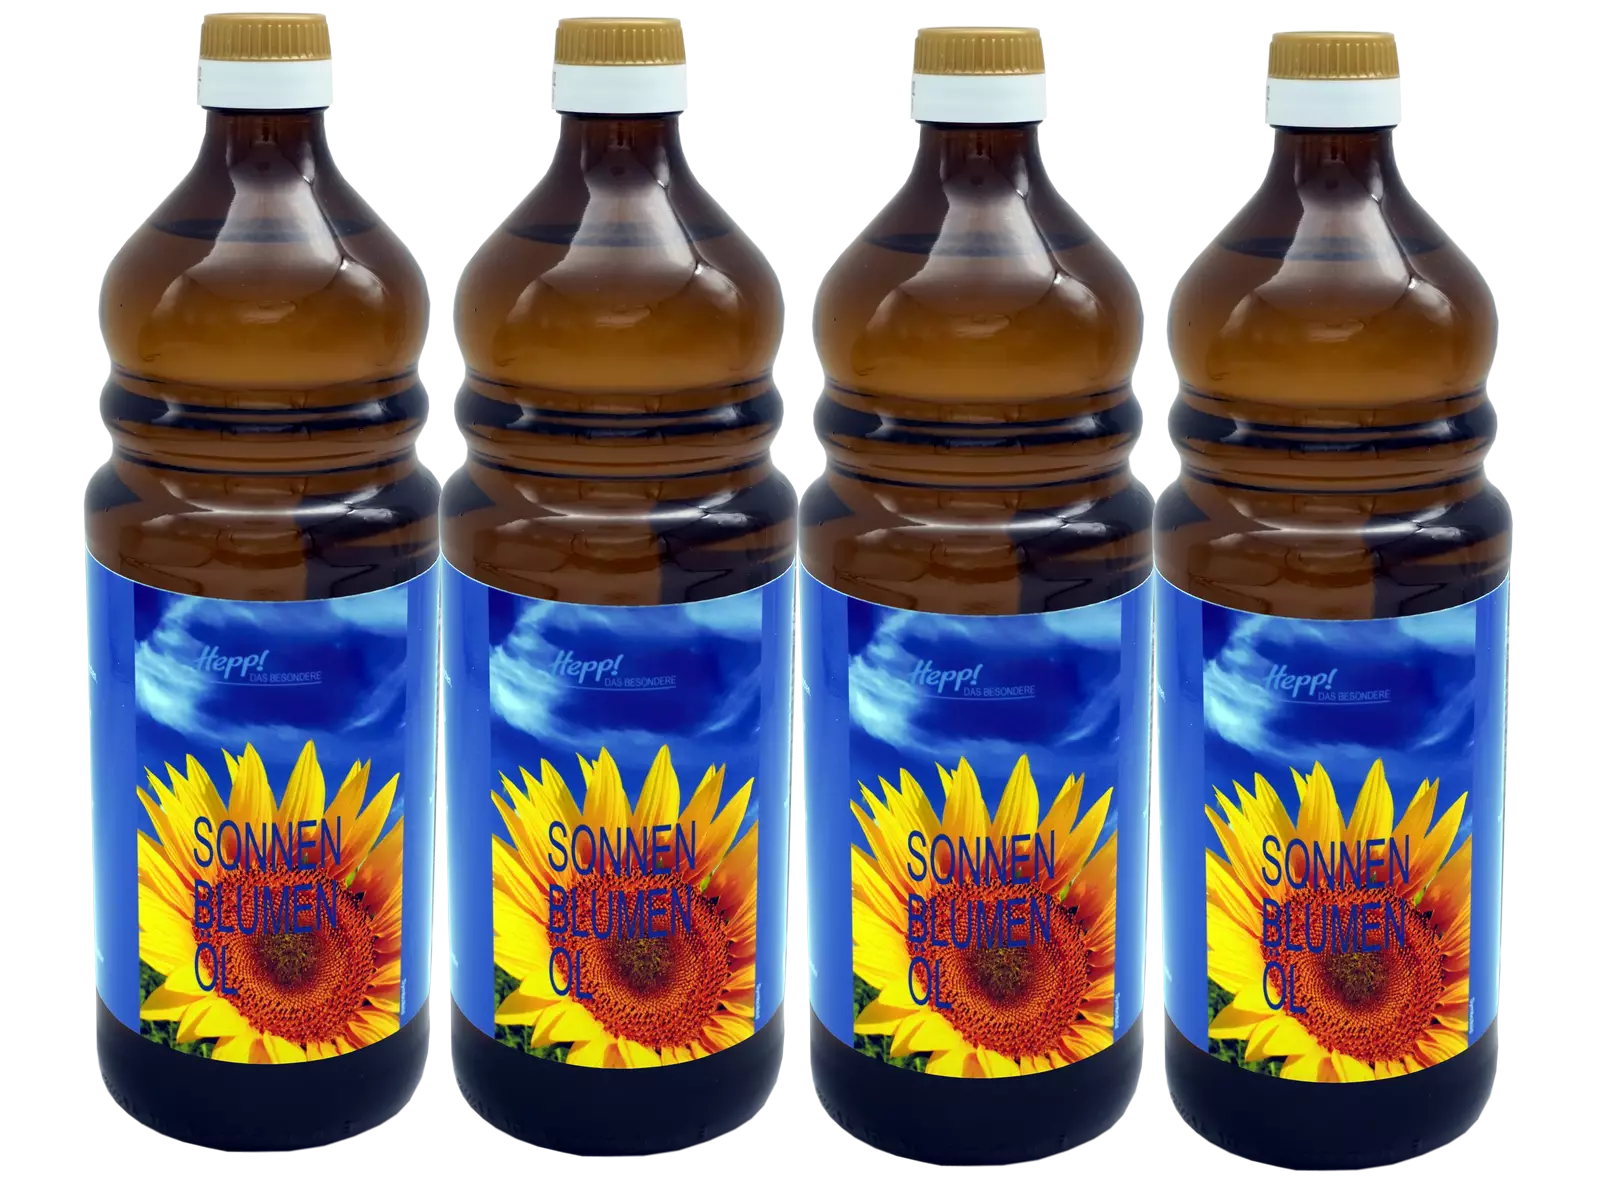 Sonnenblumenöl (4x1Liter)